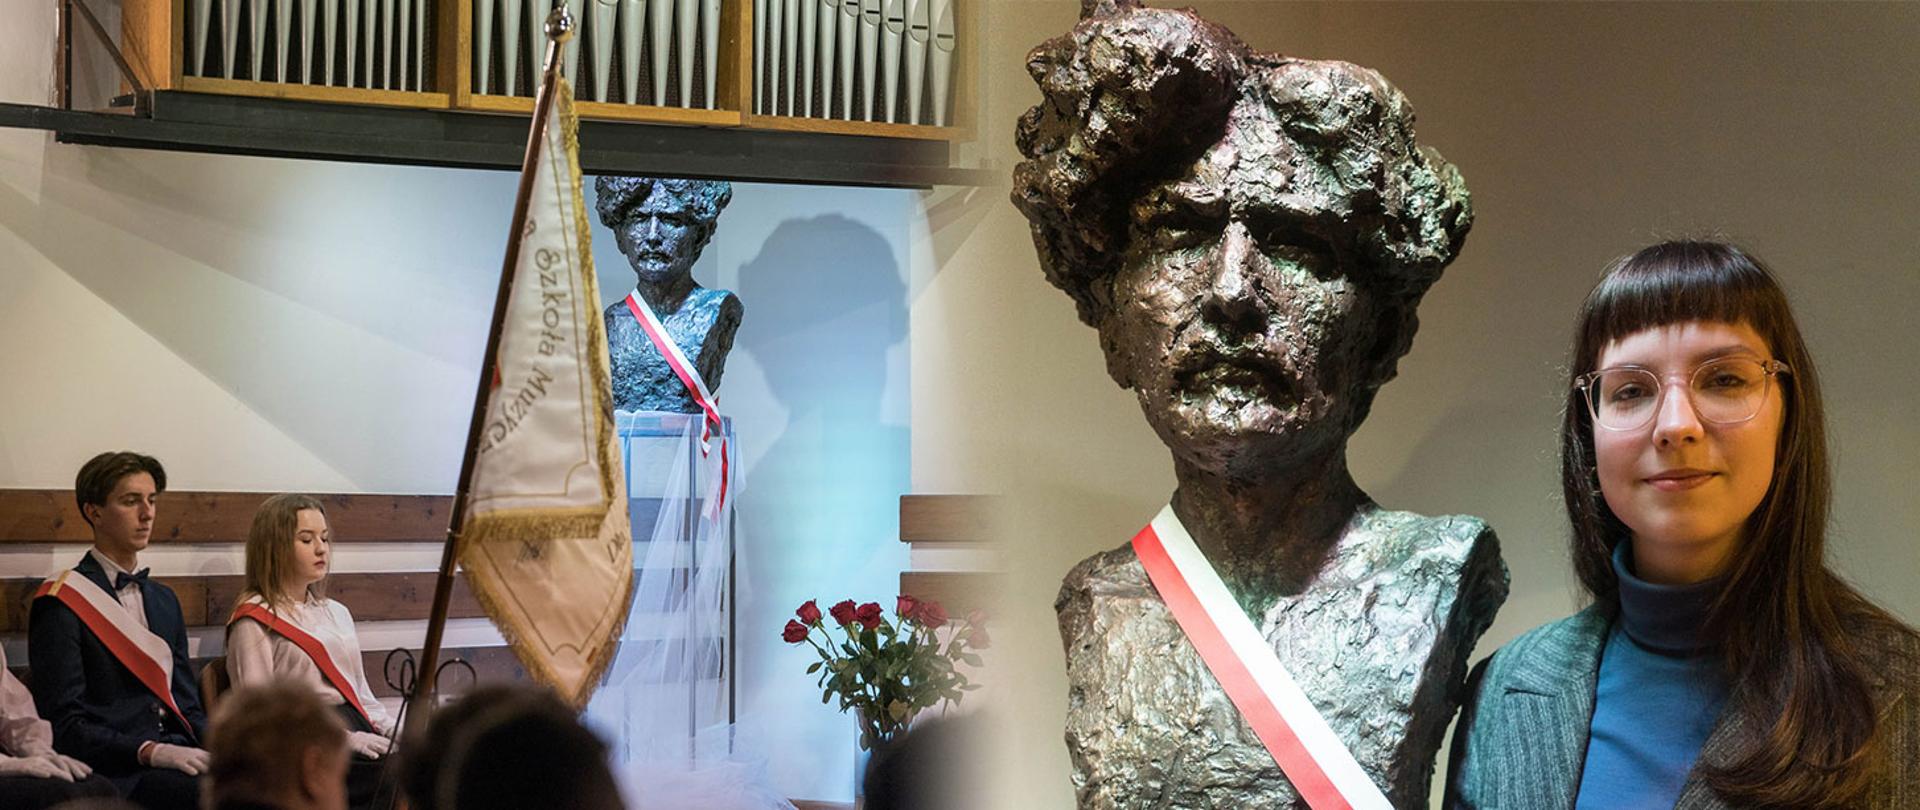 Grafika przedstawia dwa zdjęcia połączone ze sobą płynnym przejściem. Na zdjęciu z lewej strony Widać siedzących pod ścianą uczniów ze sztandarem szkoły a w tle w narożniku sali stoi popiersie Ignacego Jana Paderewskiego. Na zdjęciu, które znajduje się z prawej strony grafiki widać autorkę popiersia Lidię Tańską pozującą z popiersiem Ignacego Jana Paderewskiego. Po lewej stronie stoi popiersie, a po prawej autorka rzeźby.